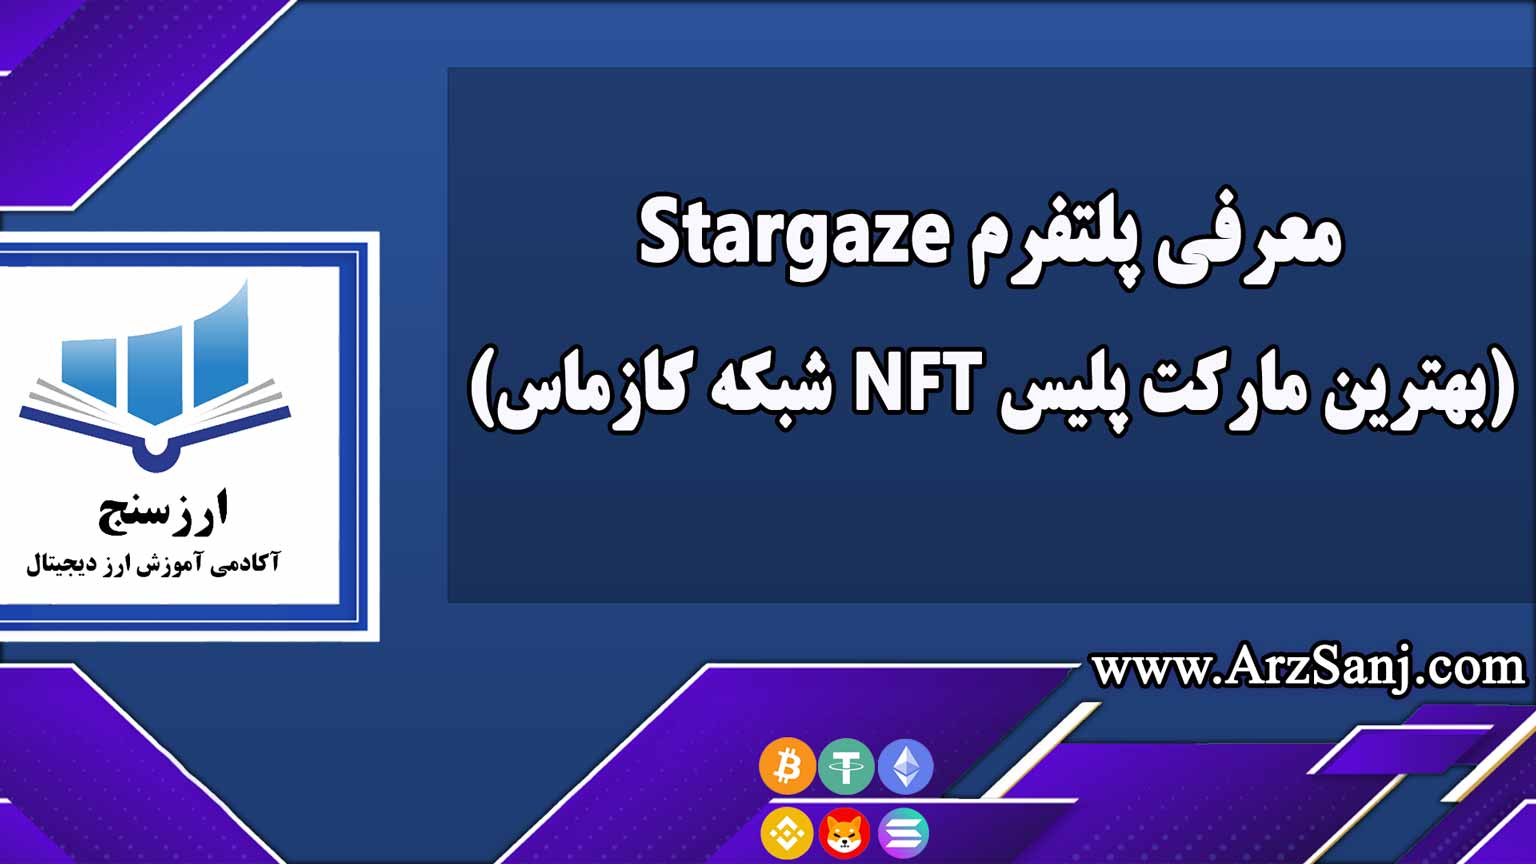 معرفی پلتفرم Stargaze(بهترین مارکت پلیس NFT شبکه کازماس)